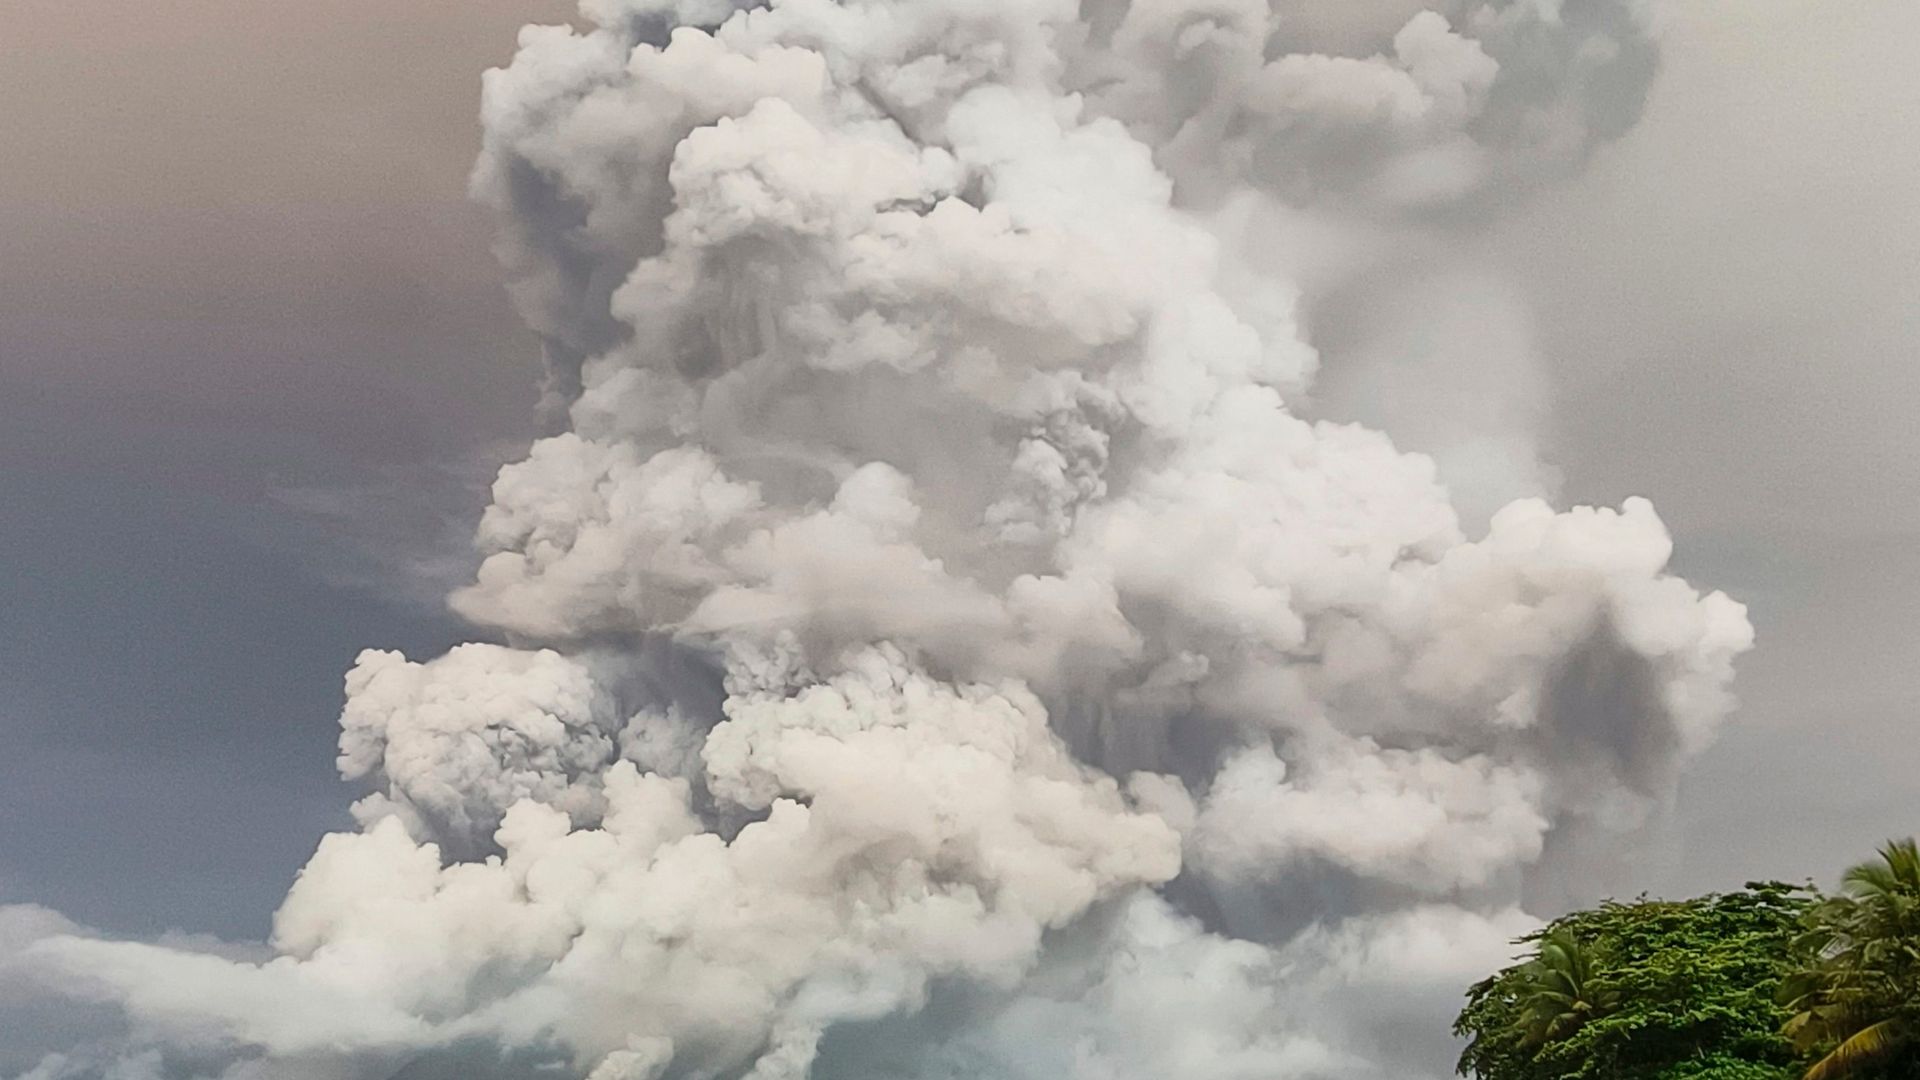 indonesien: vulkanausbruch löst höchste alarmstufe aus